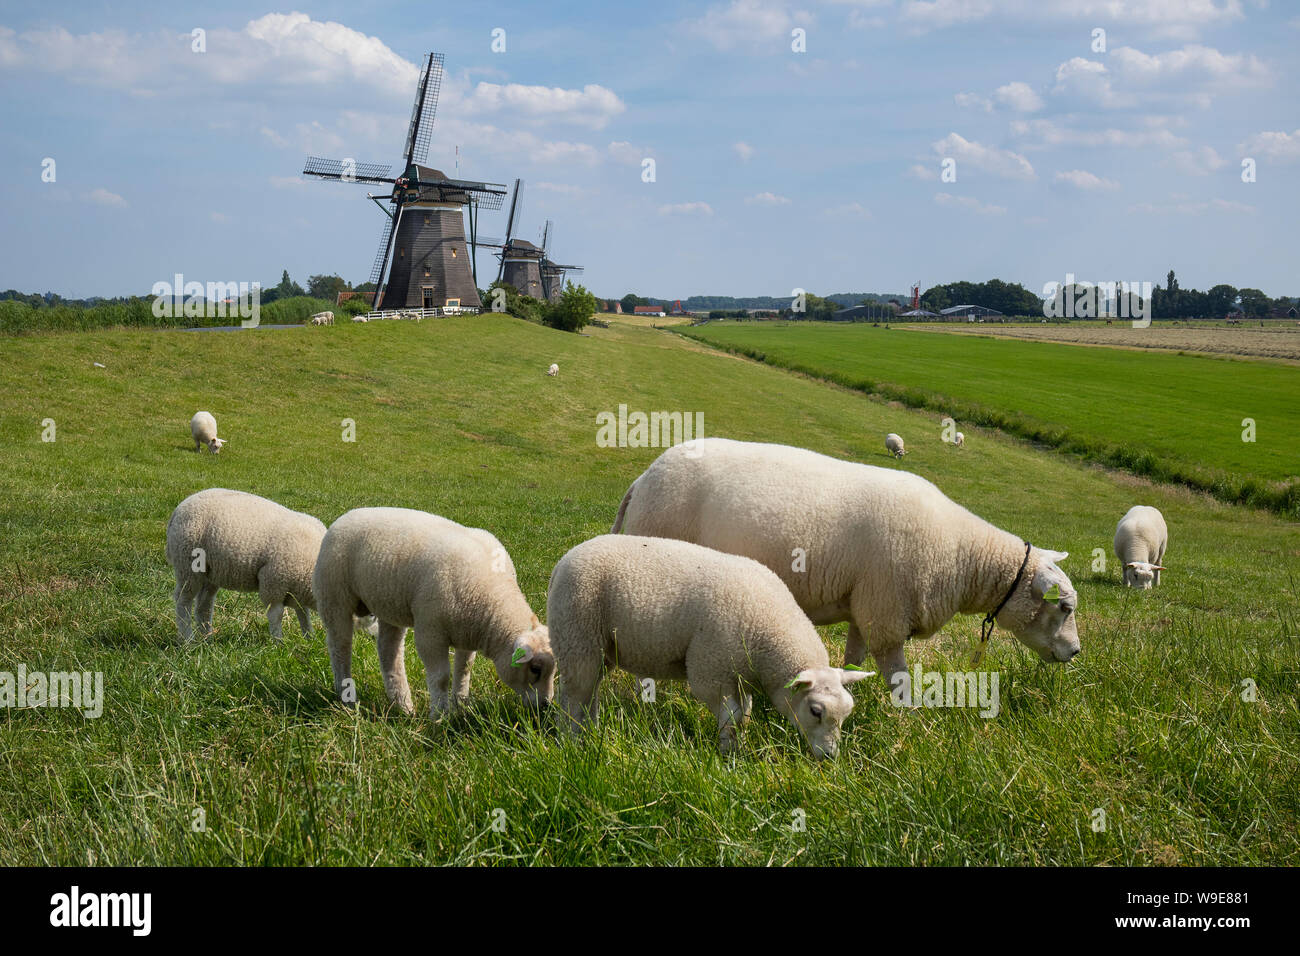 Leidschendam, Niederlande - 24 Juni 2019: Molendriegang, drei Windmühlen, in der Gegend von Leidschendam mit Schaf im Vordergrund. Stockfoto